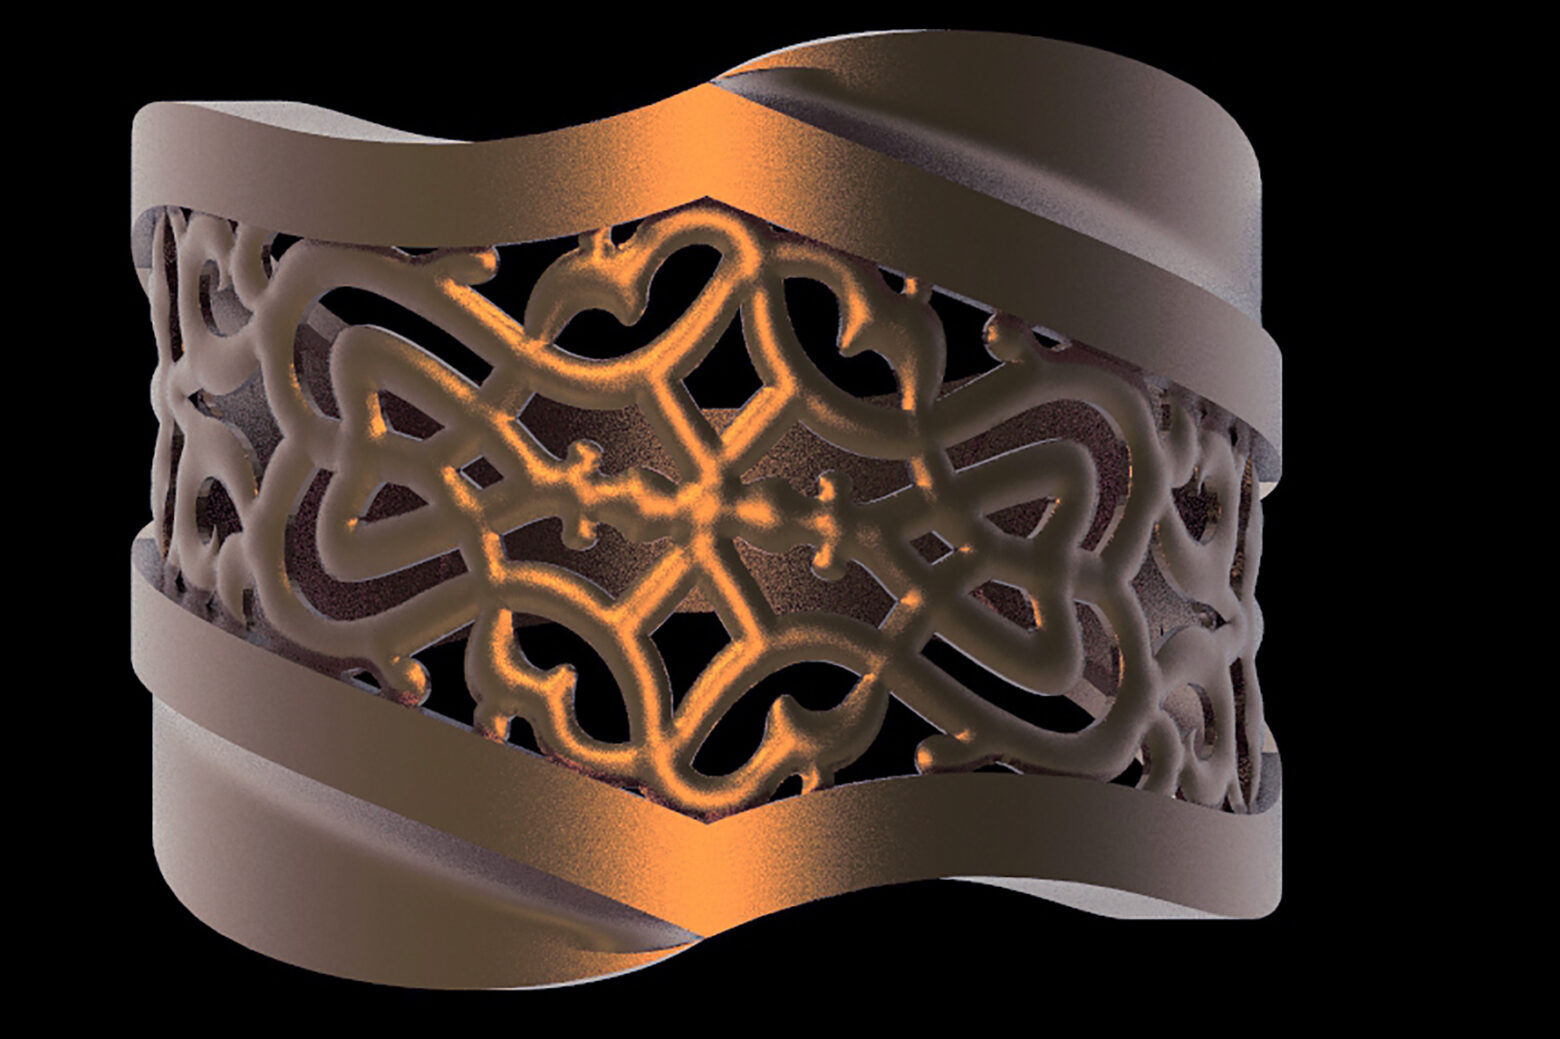 10+ 3d stl turkish rings for fingers models set for 3d printers in 3d stl format digital download